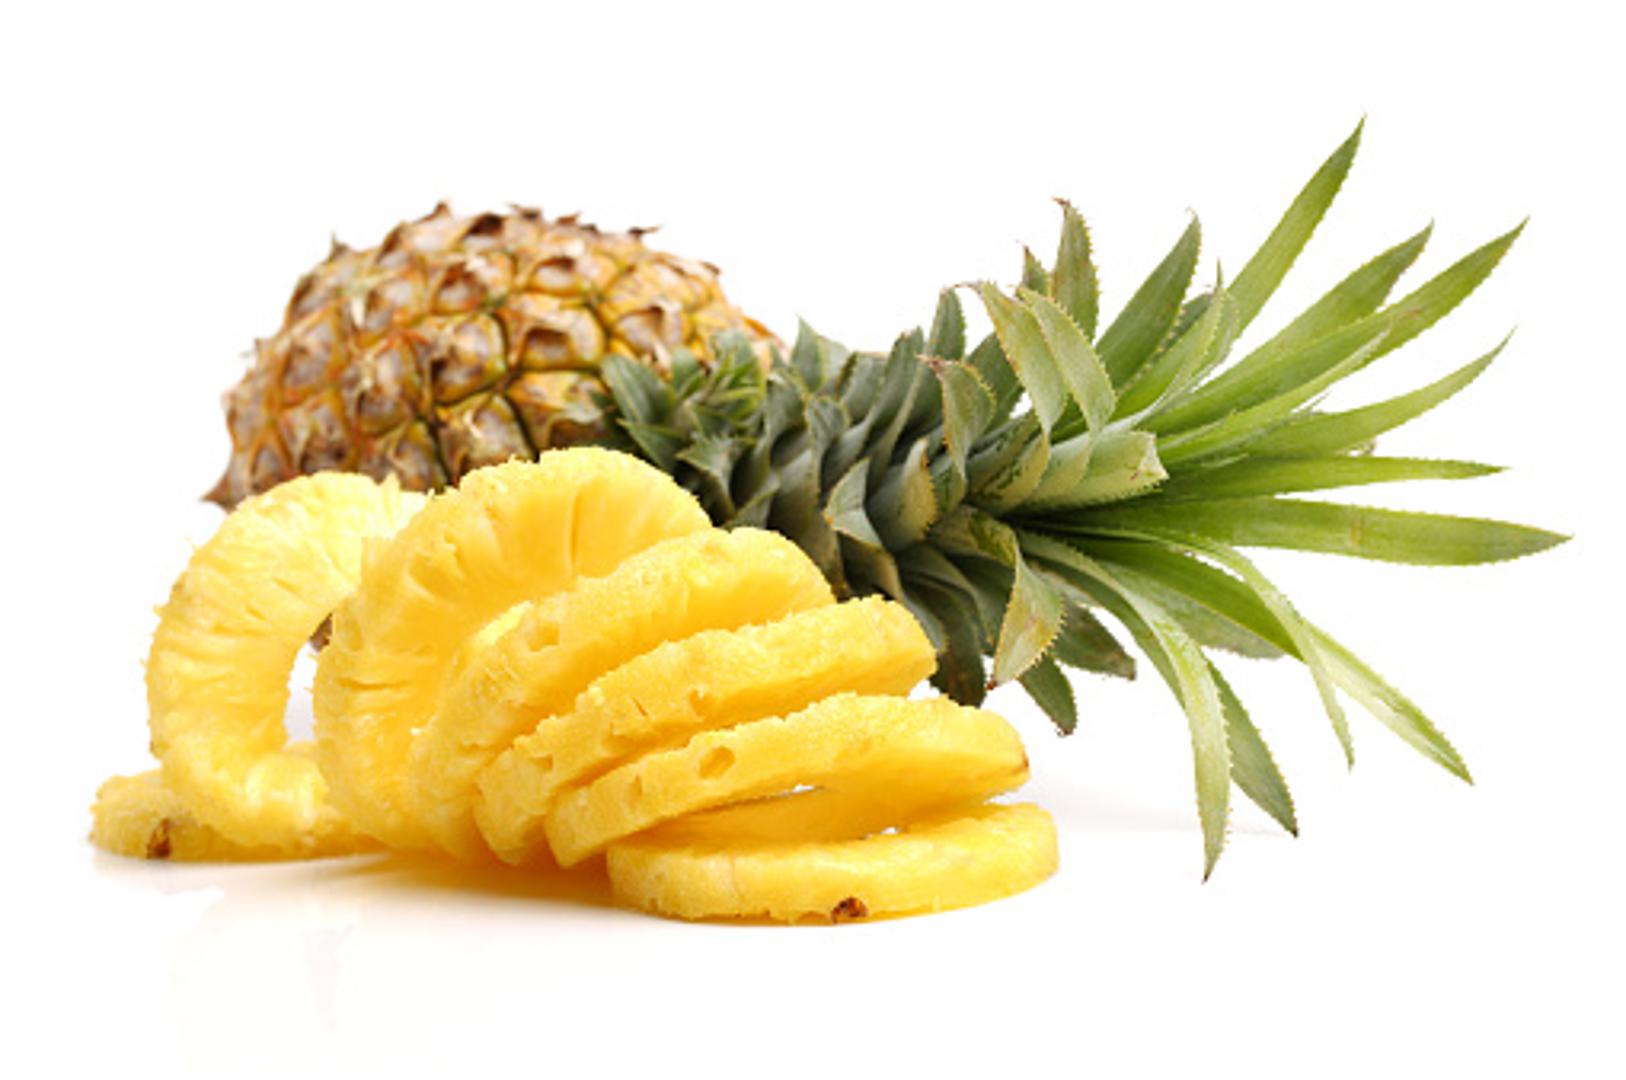 5. ANANAS - Rezanje ananasa često predstavlja popriličan izazov, ali vrijedi truda. Ovaj popularni tropski plod prepun je vitaminima i mineralima, uključujući vitamin A, vitamin C, kalcij, fosfor i kalij, koji mogu spriječiti prehladu i jačati kosti. 